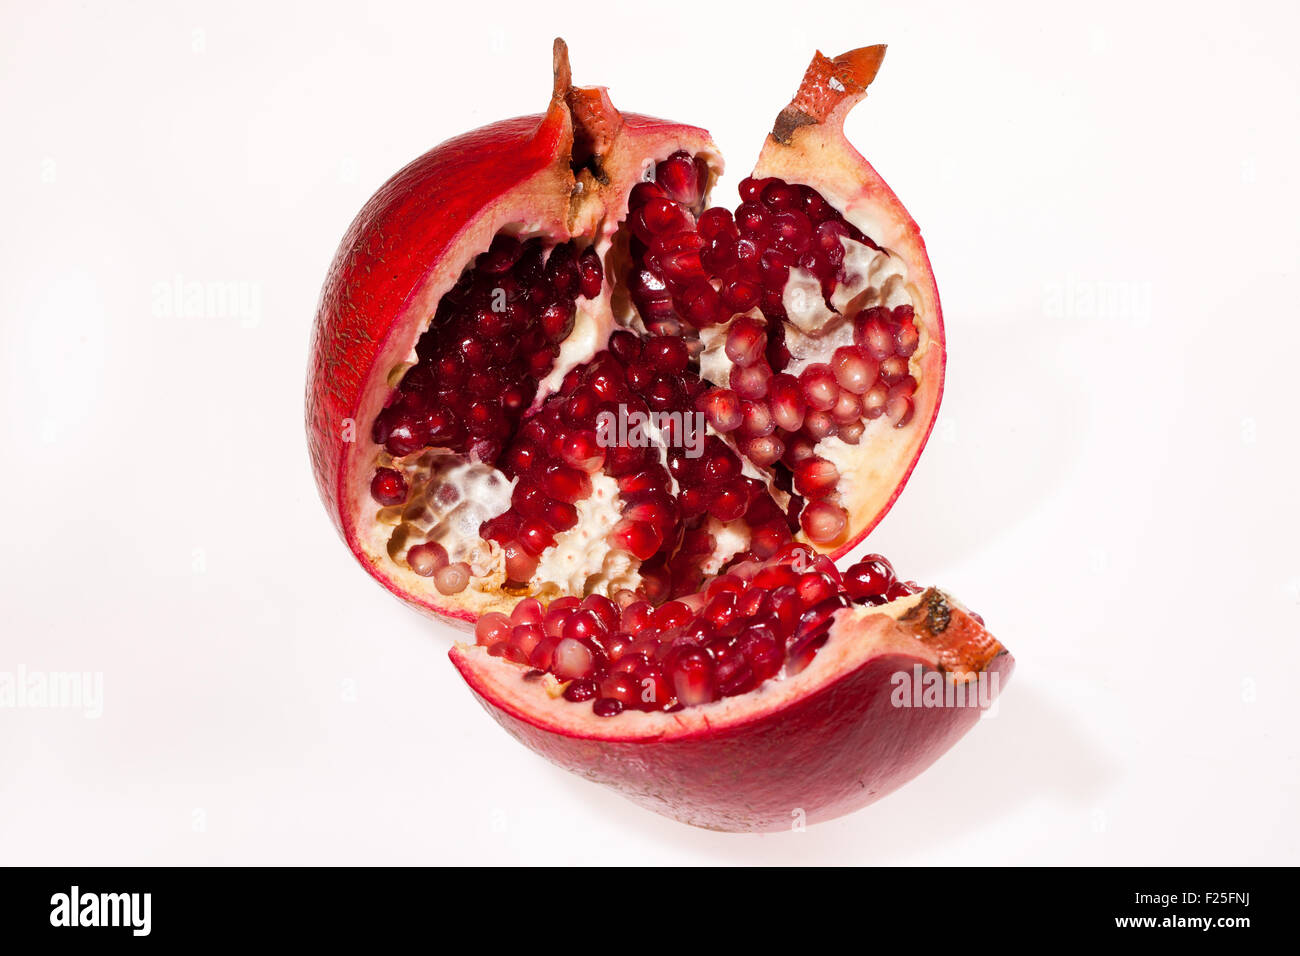 Rouge Grenade coupe fruits isolés bean produit alimentaire close up un objet macro Banque D'Images